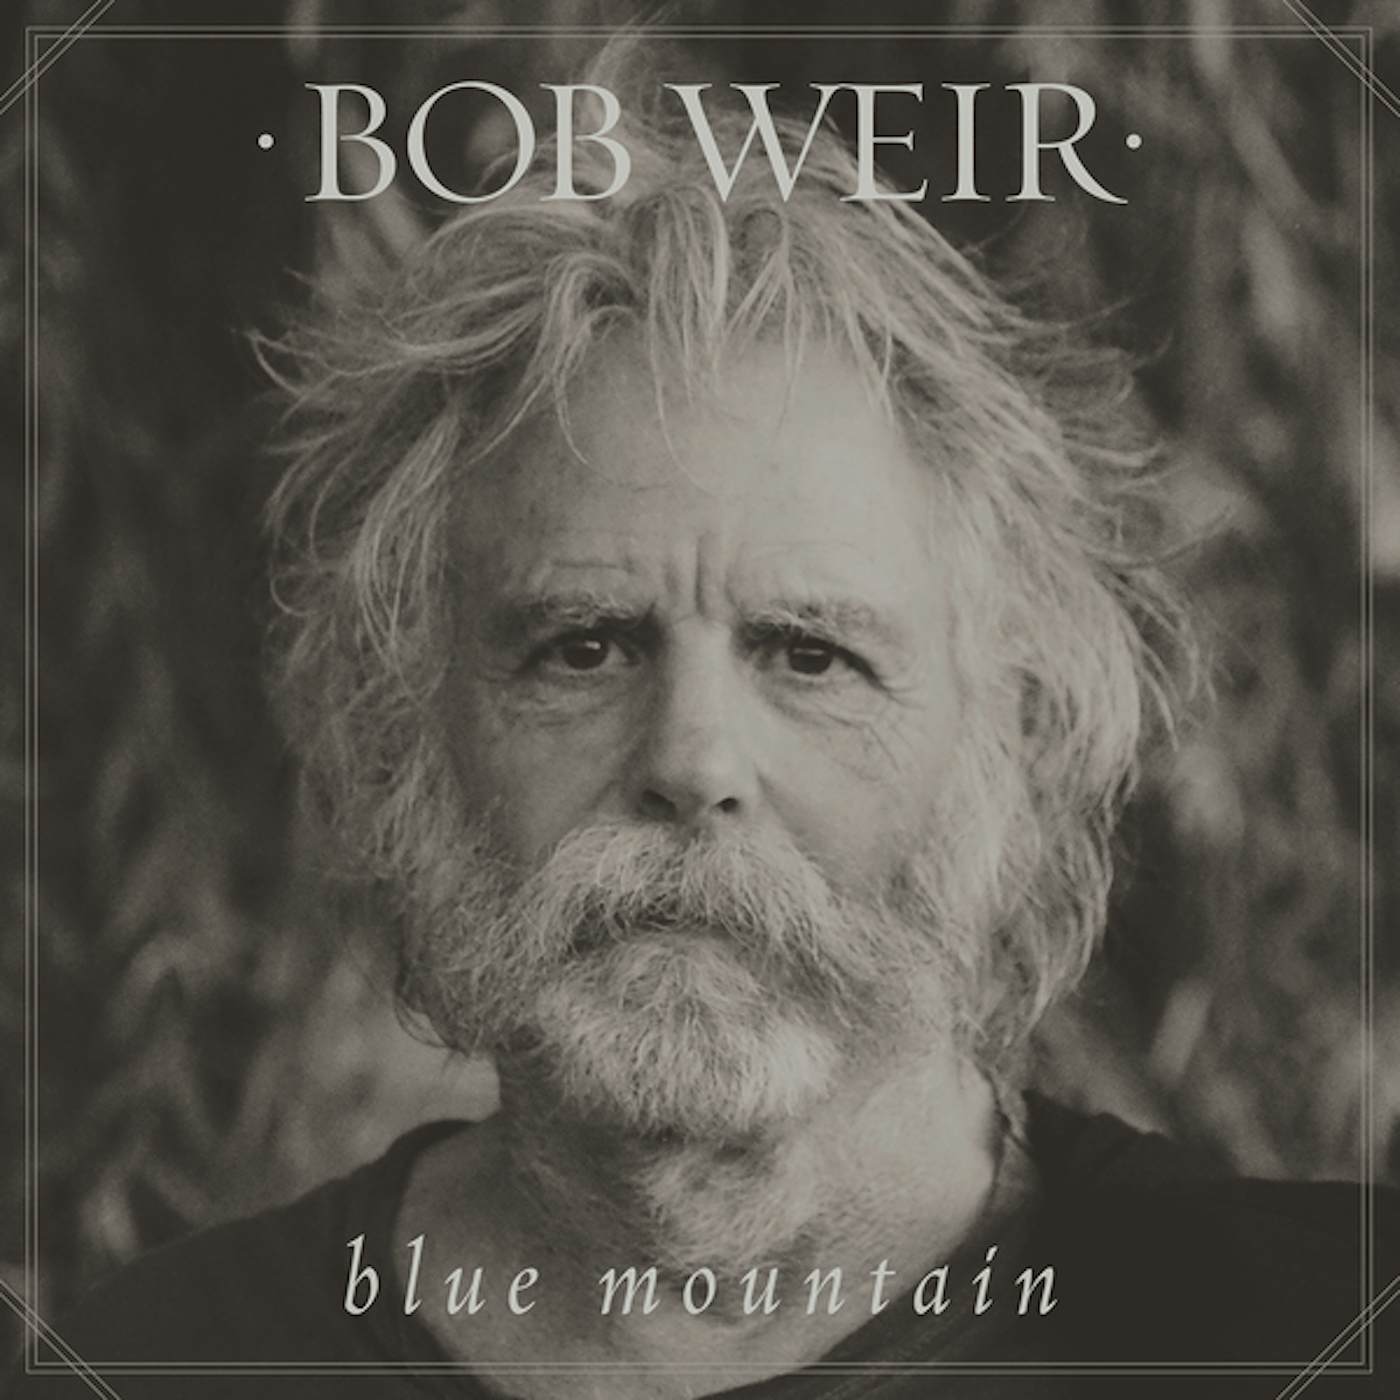 Bob Weir BLUE MOUNTAIN (150G) Vinyl Record